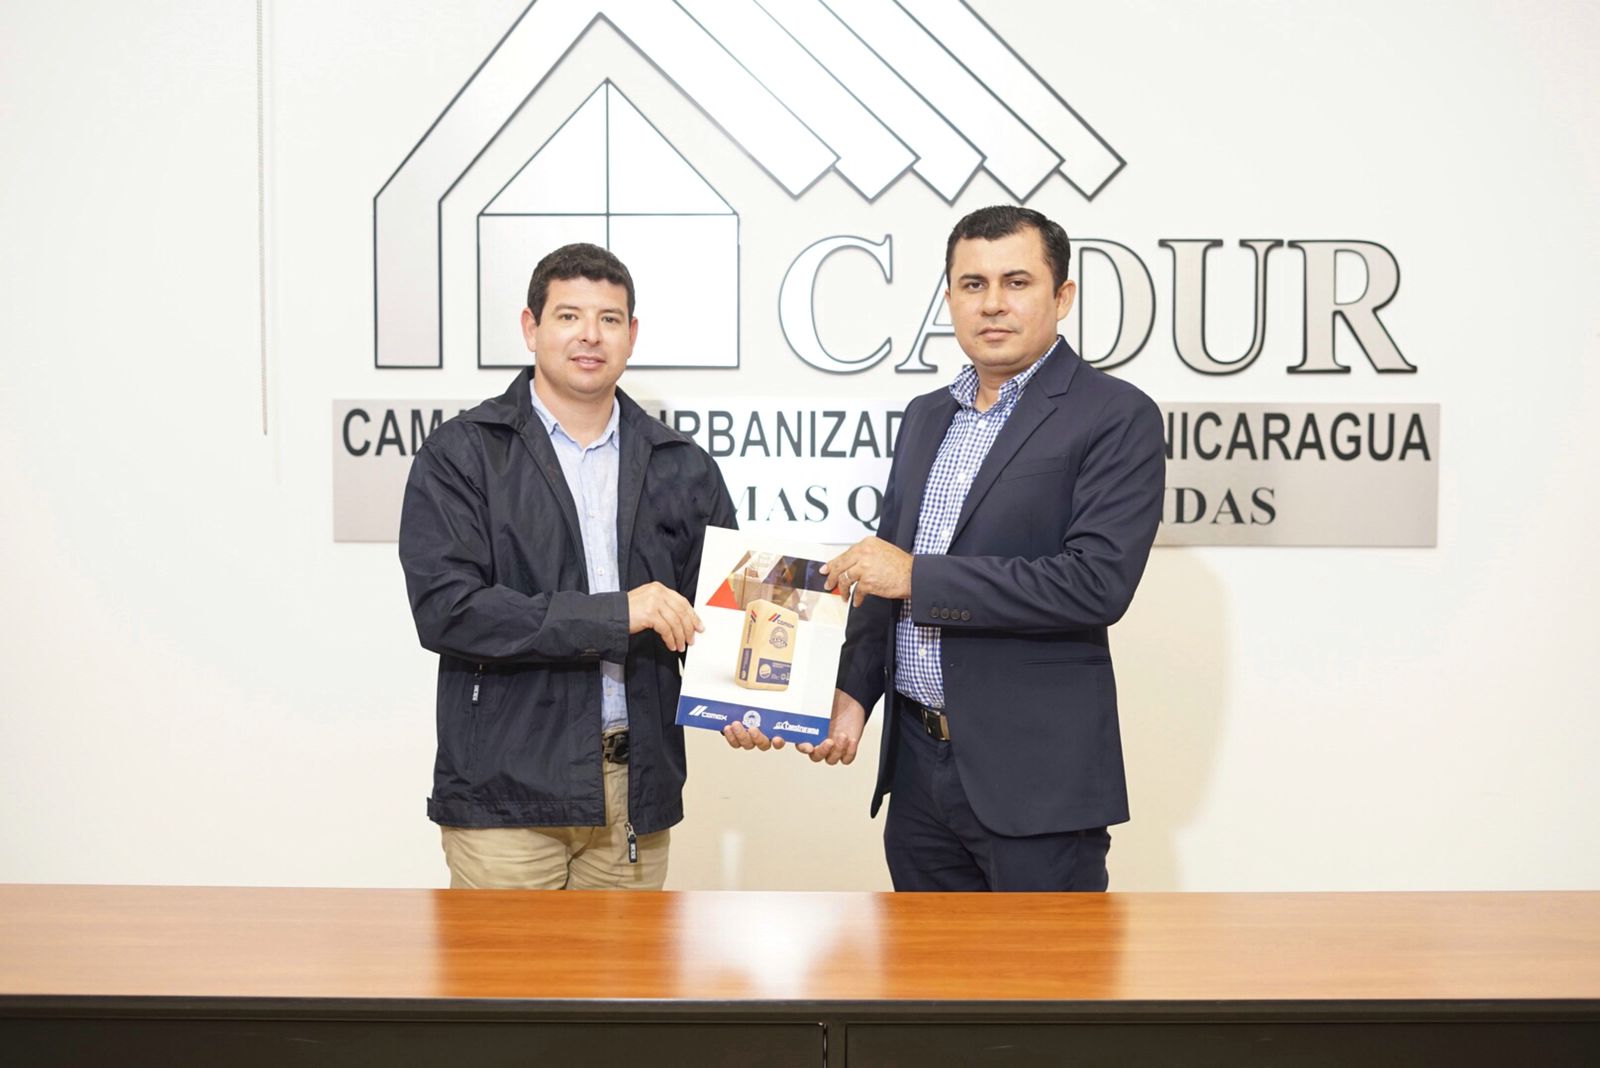 CEMEX y CADUR firman convenio de cooperación para una construcción sustentable de viviendas